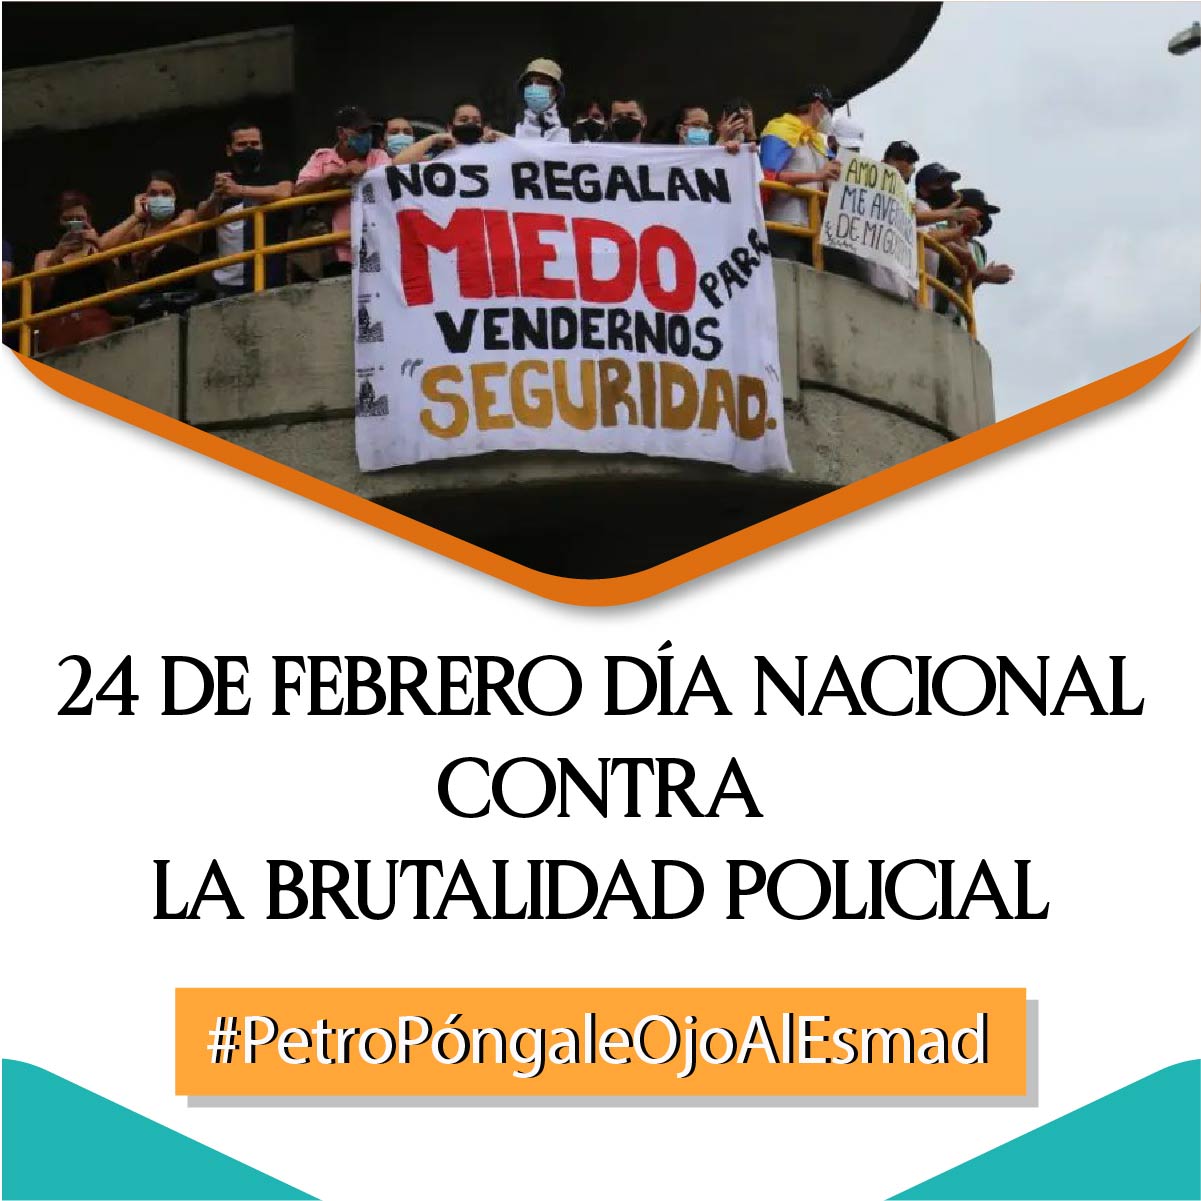 24 de febrero, día nacional contra la brutalidad policial